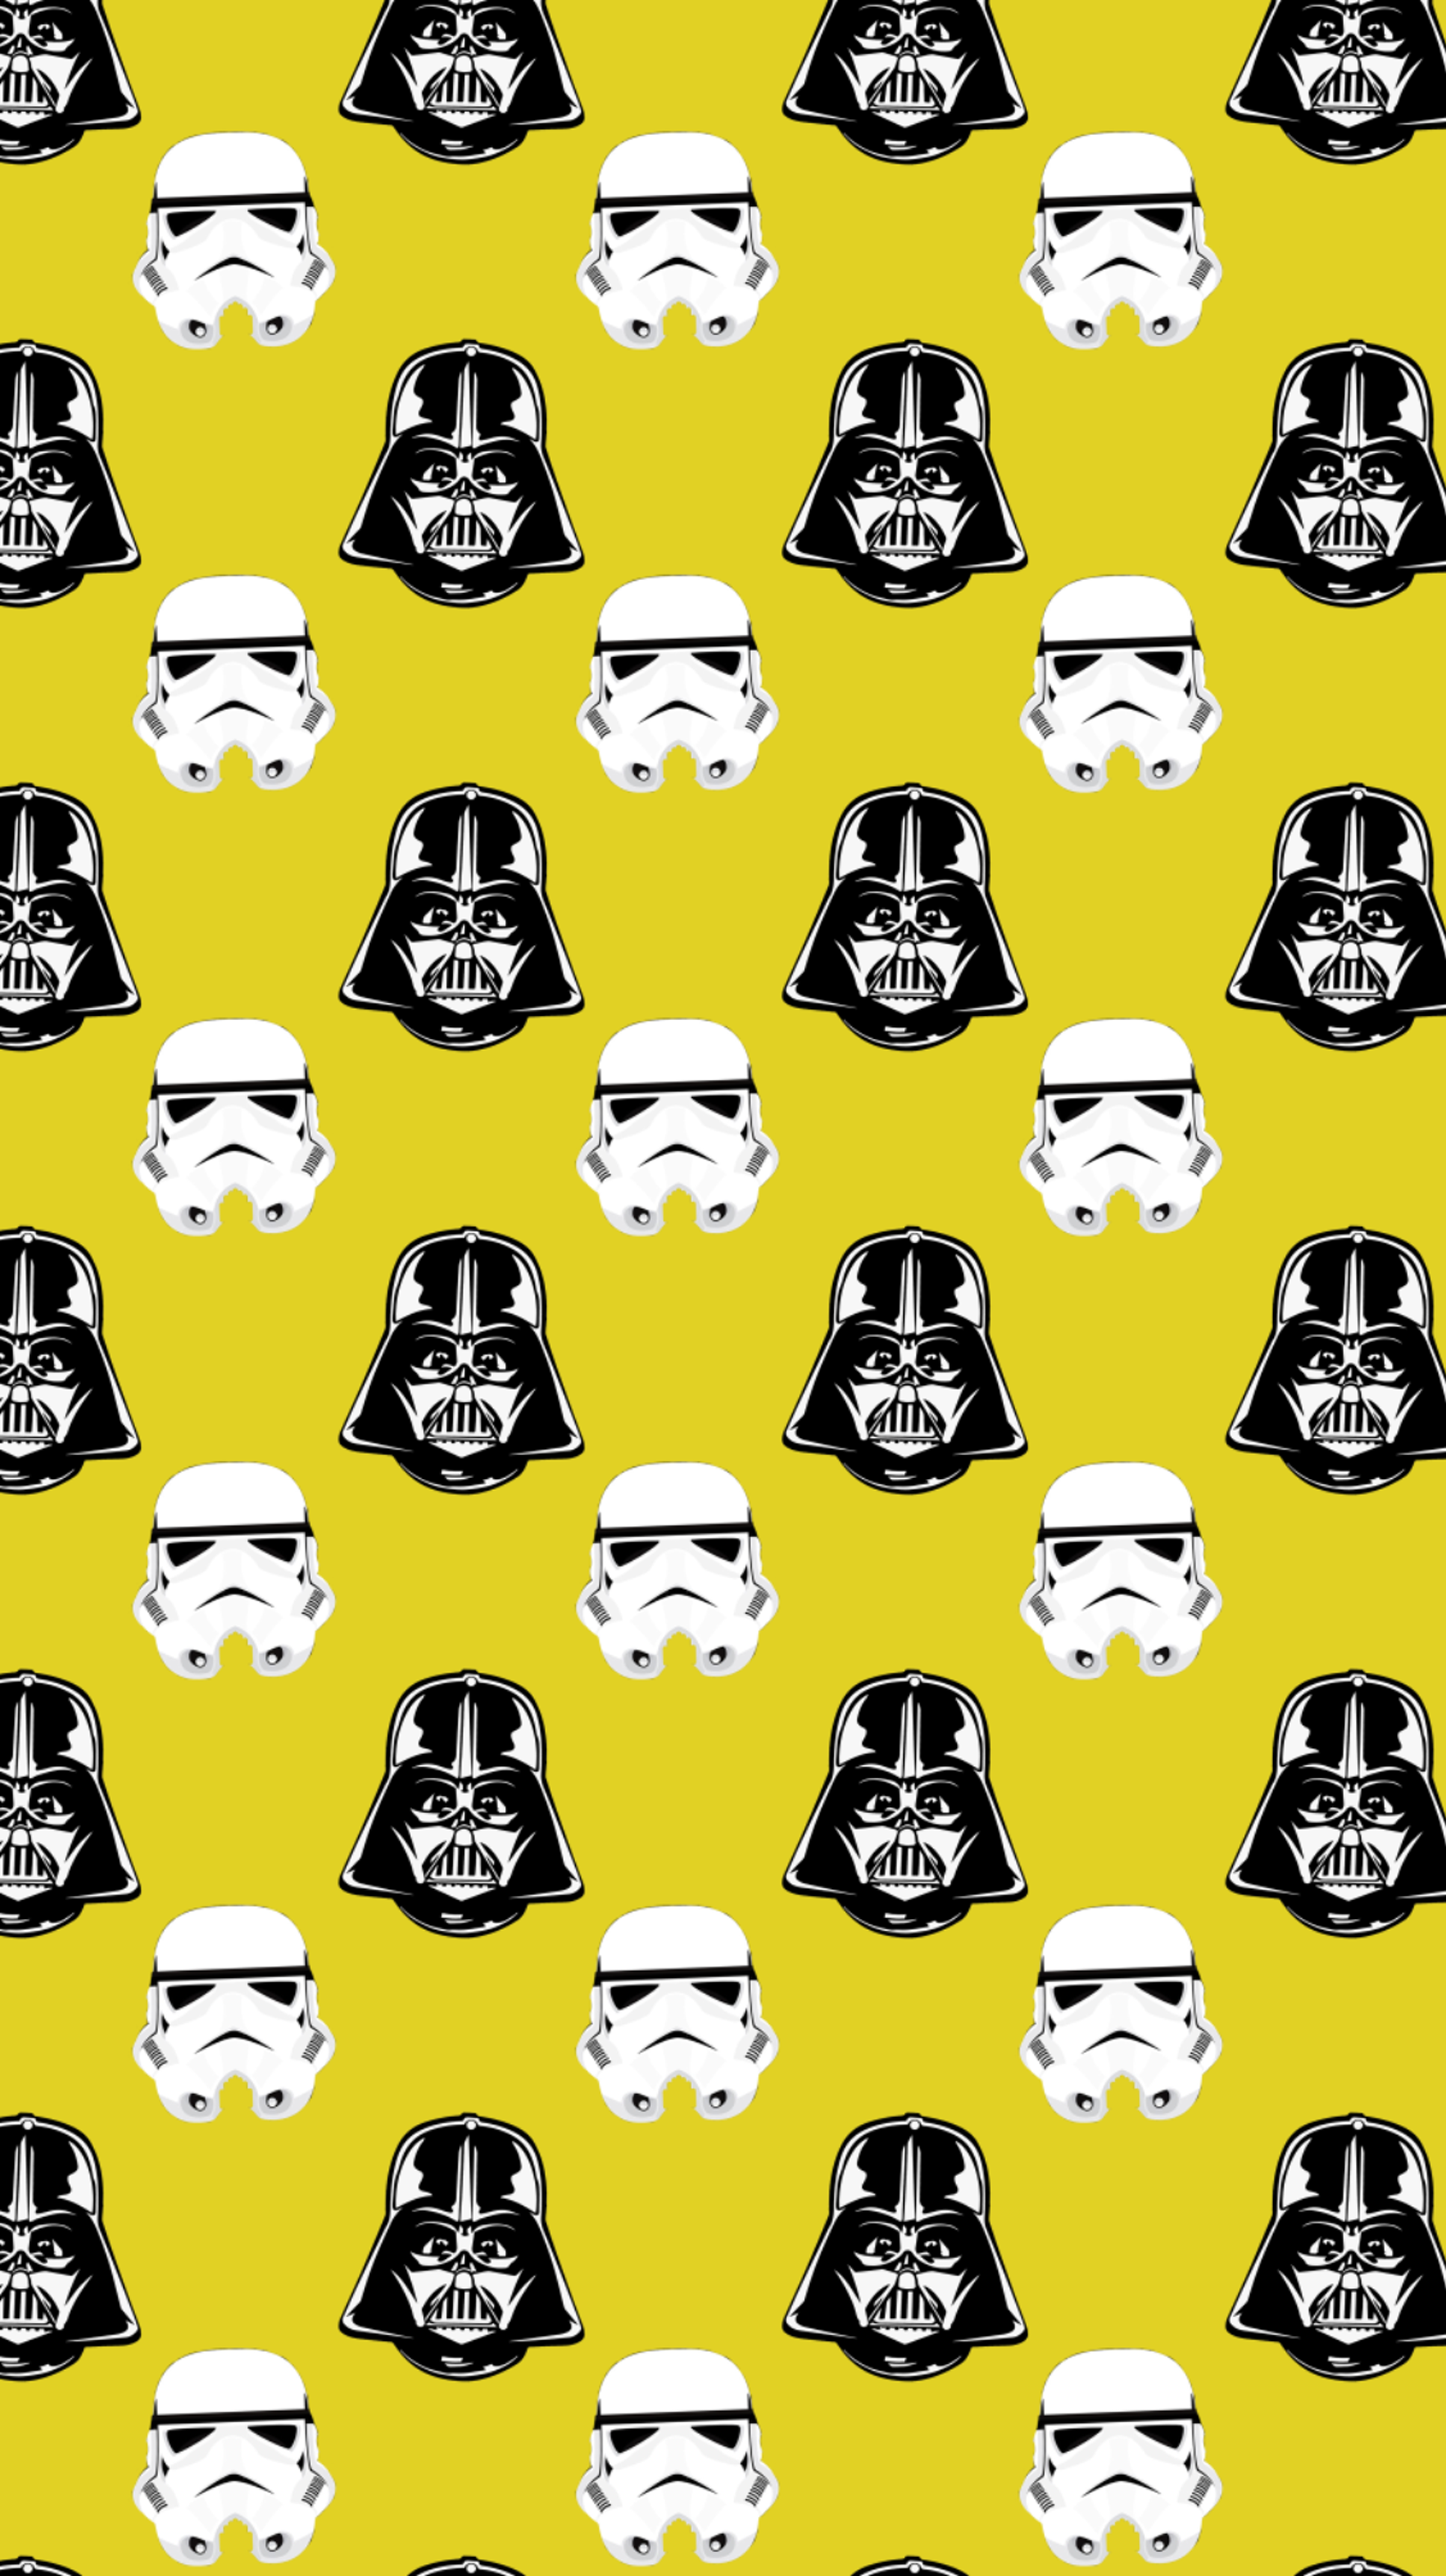 Wallpaper, Star Wars, Darth Vader, stormtrooper 3381x6024